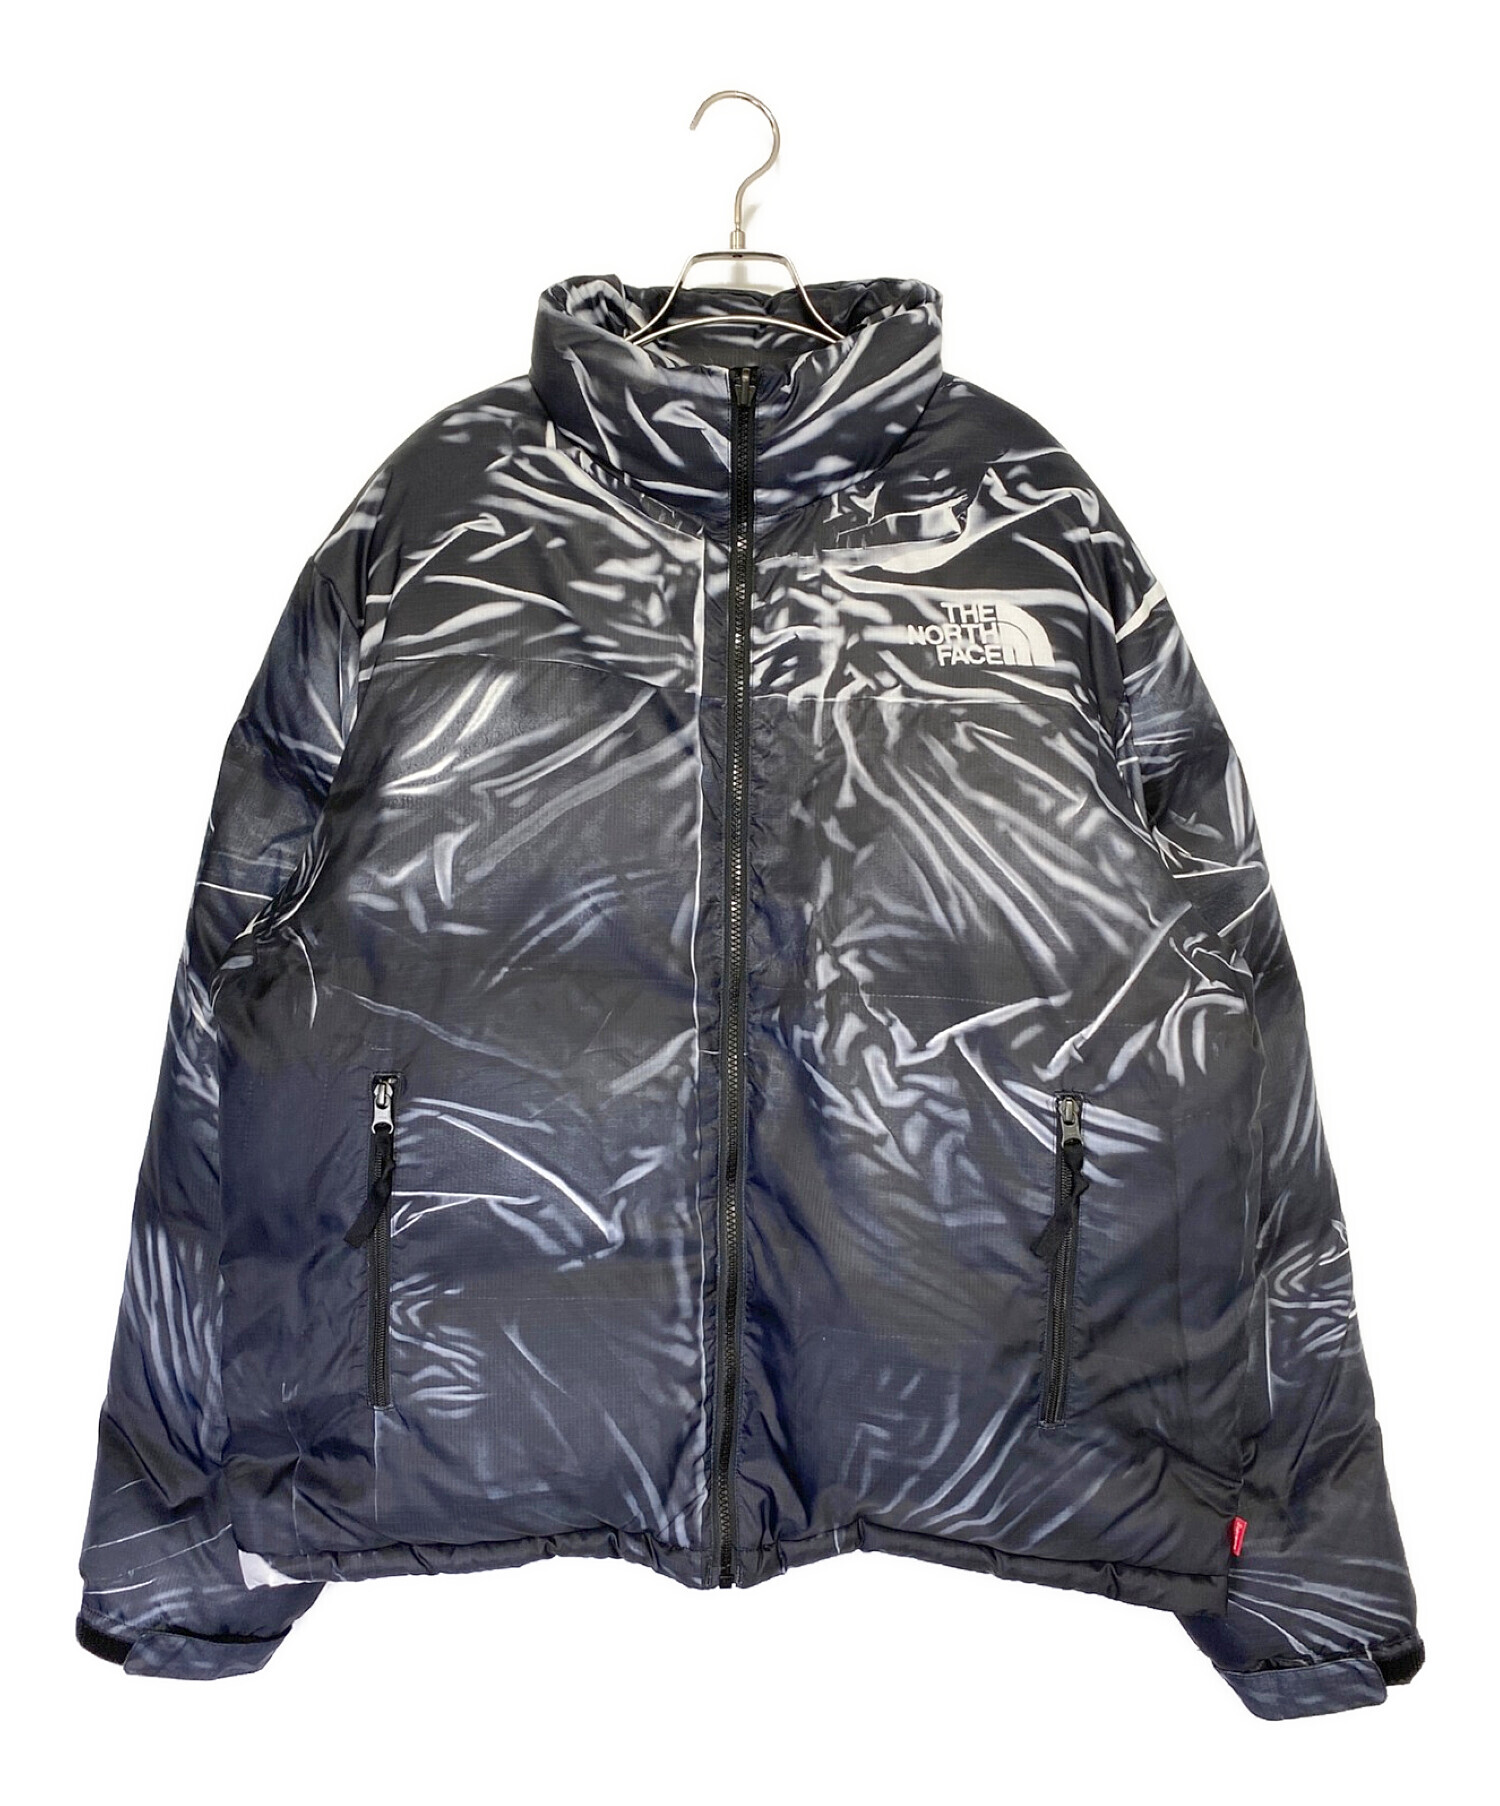 6,200円the north face nuptse jacket Black L